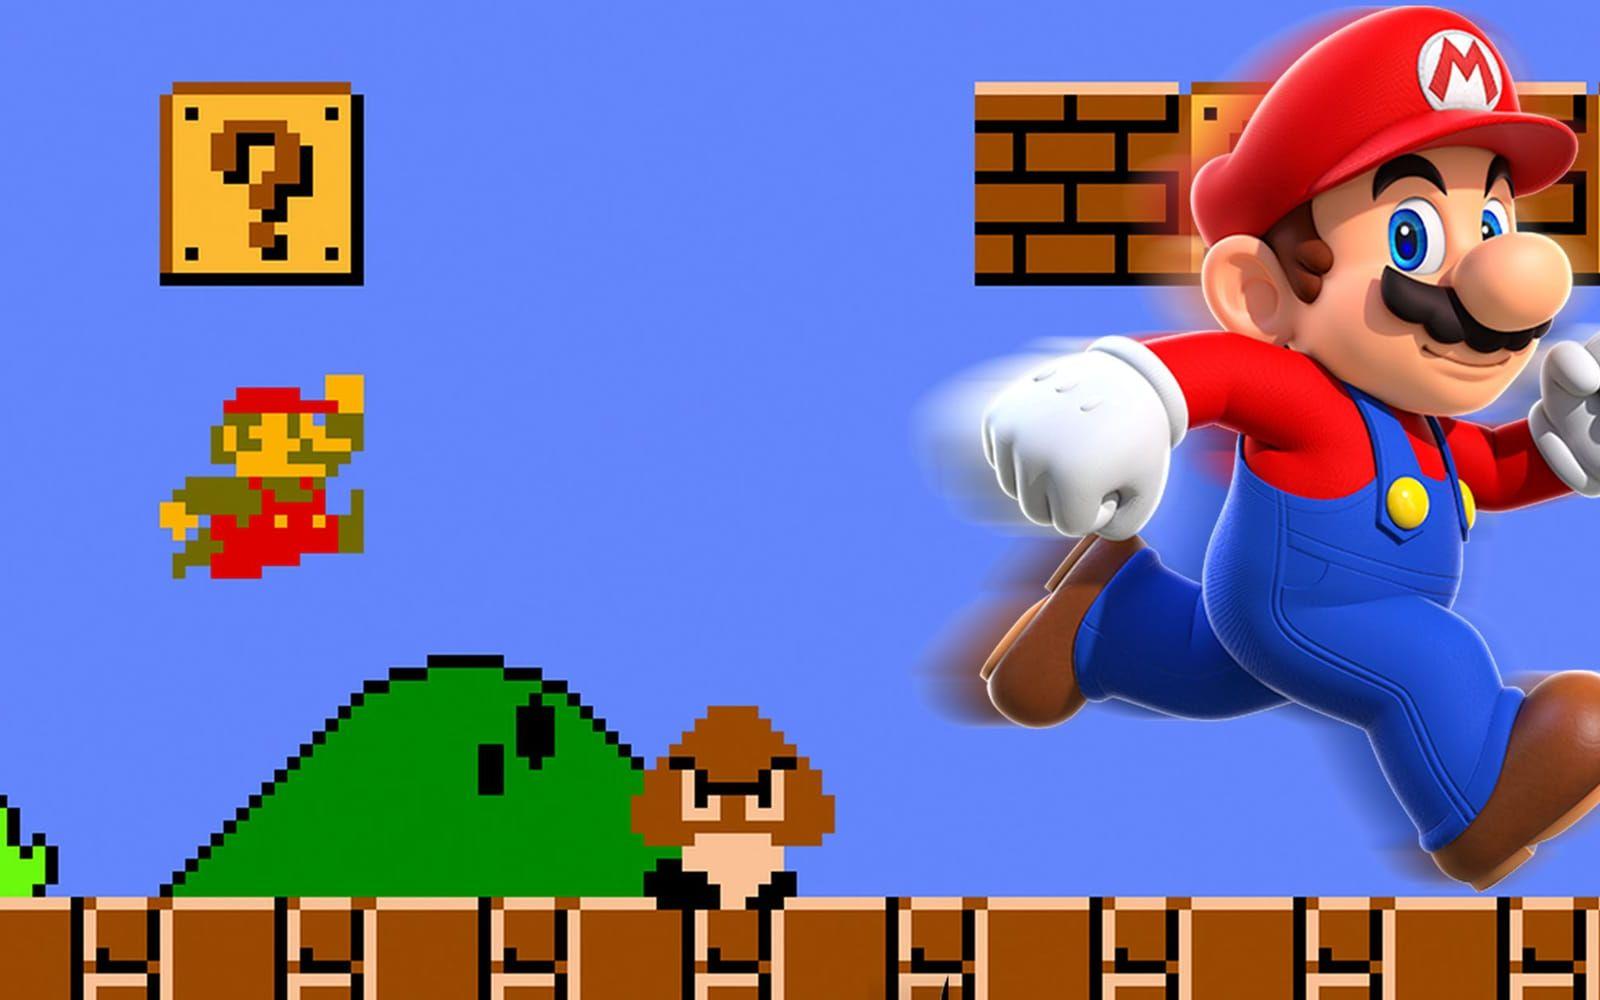 Klicka vidare för att se Super Marios utveckling genom åren.